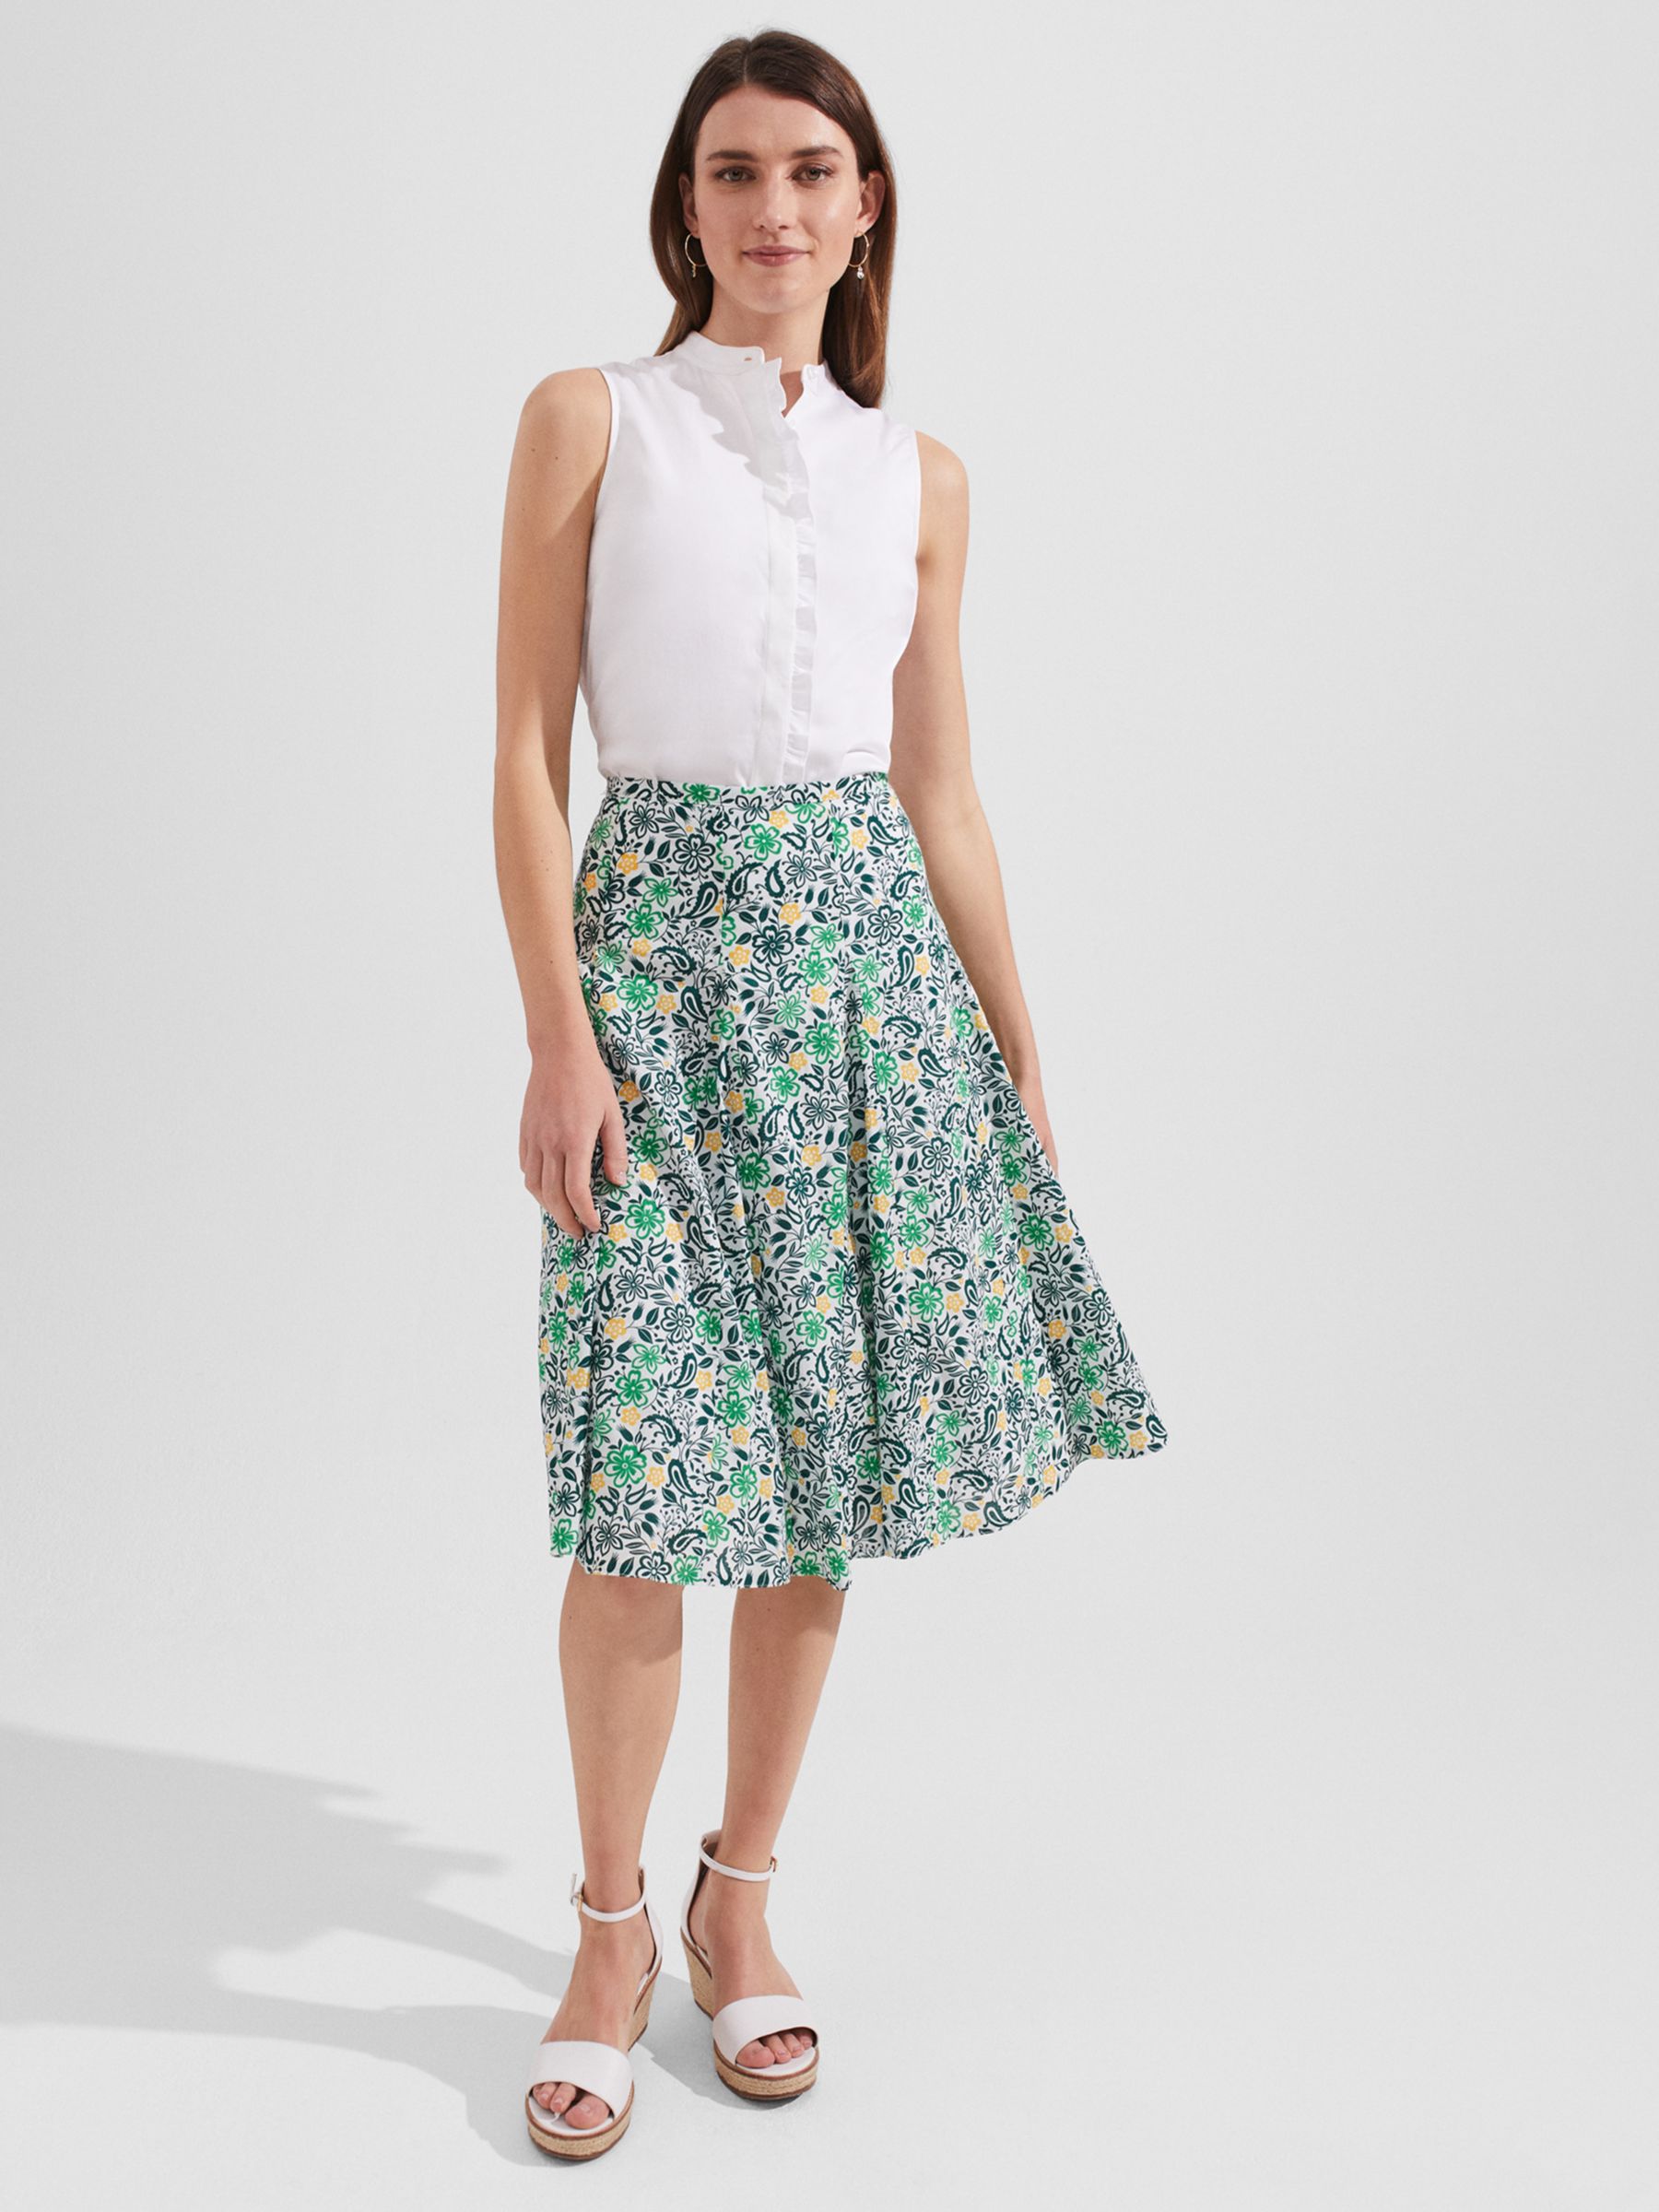 Hobbs Melina Floral Print Skirt, White/Multi